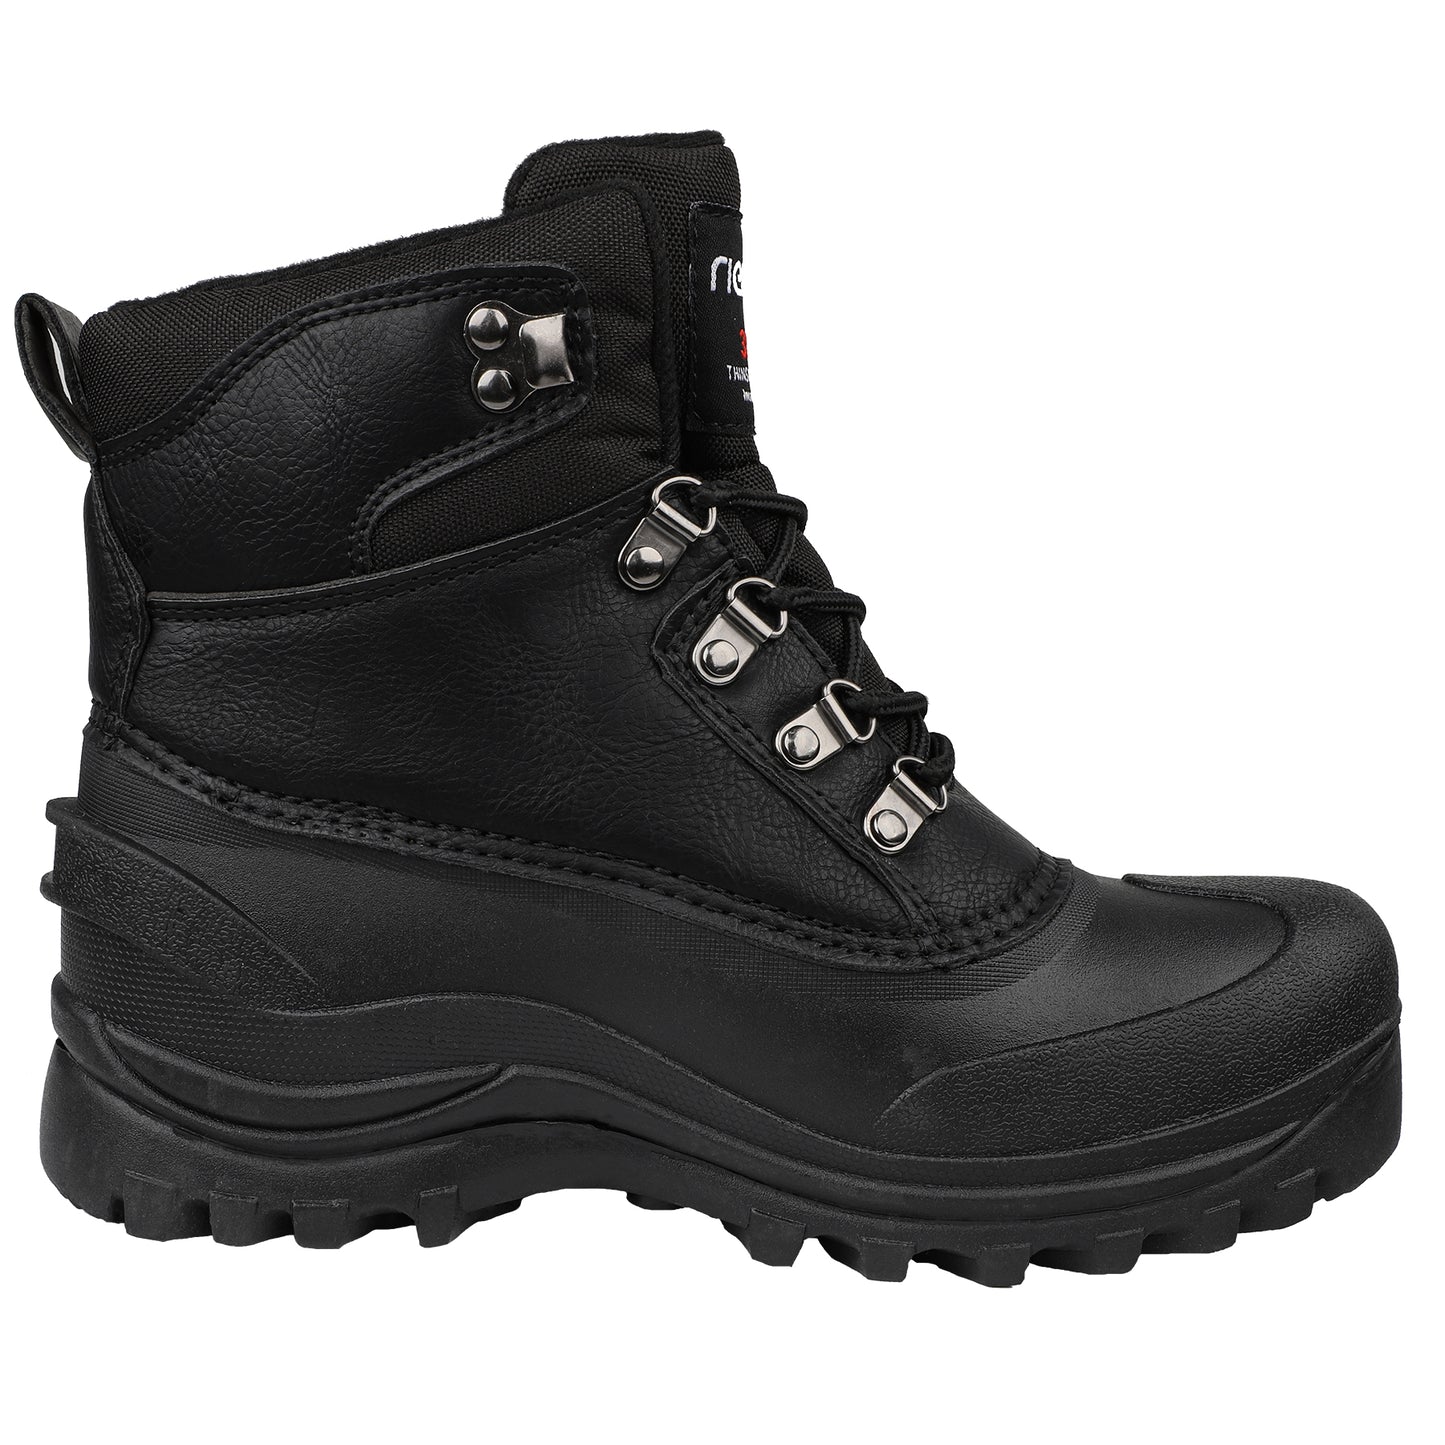 riemot Women's Snow Boots Black Waterproof & Slip-resistant Snow Boots